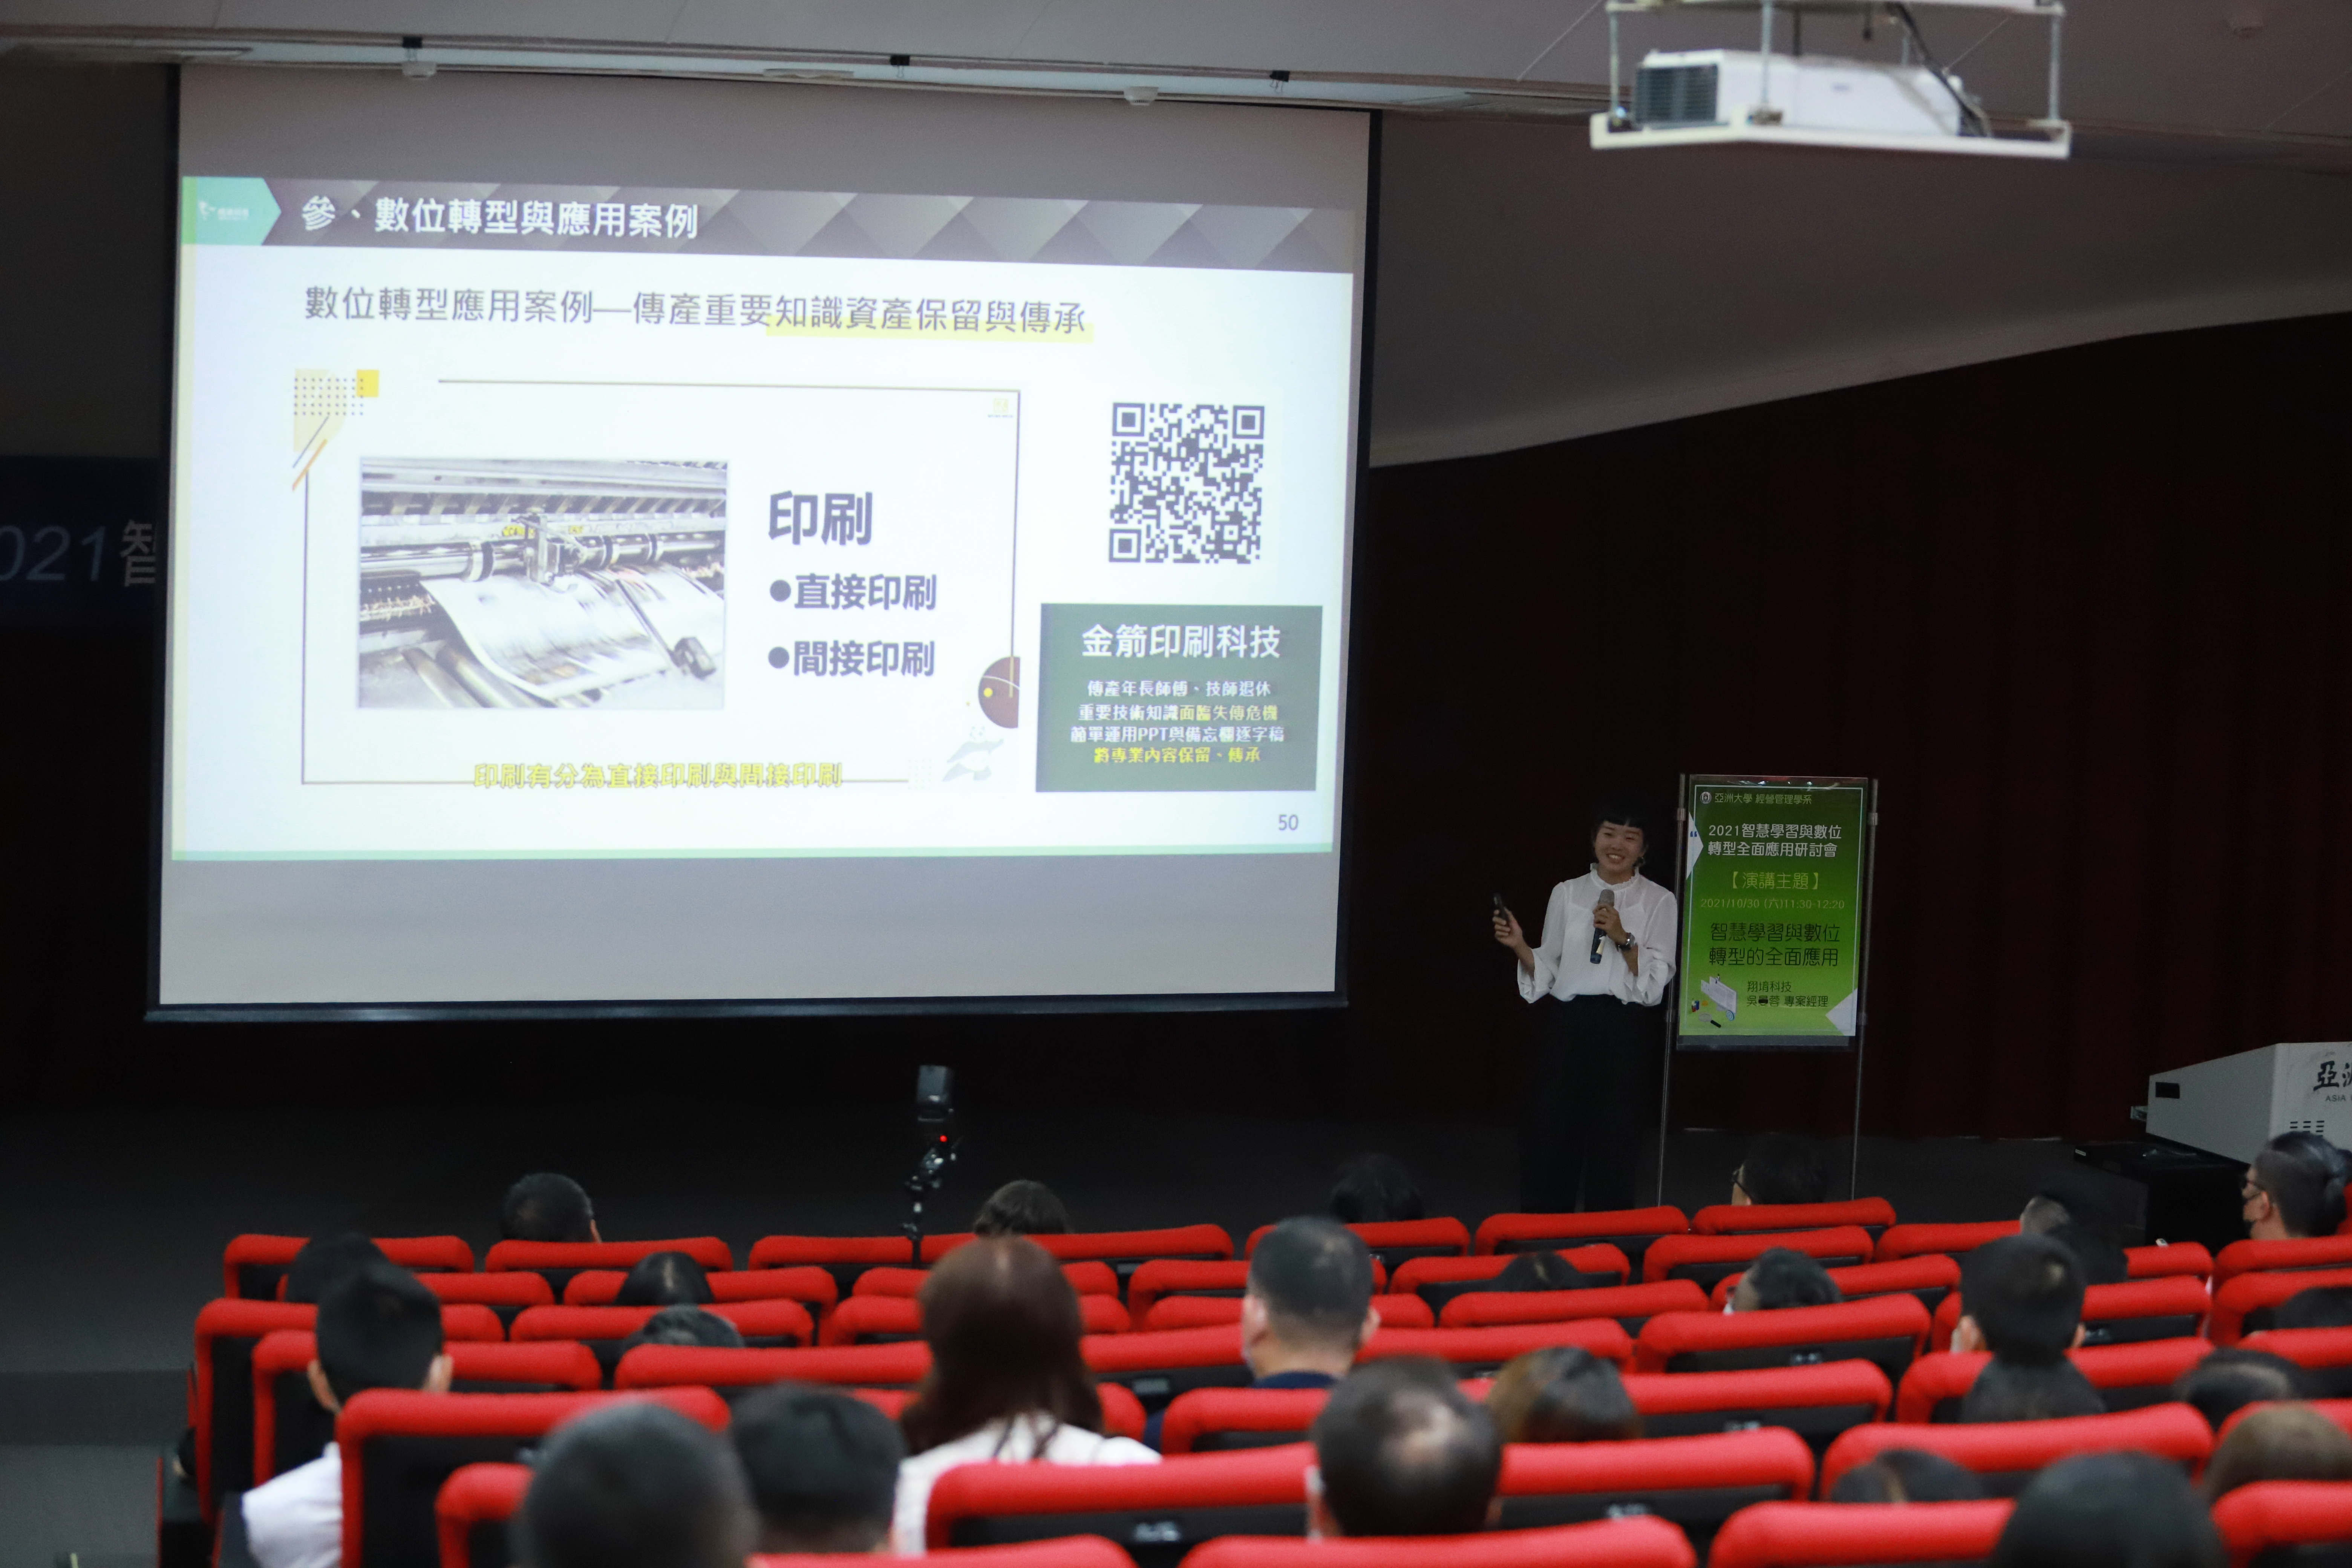 翔堉科技專案經理吳旻蓉，主講「智慧學習與數位轉型的應用」